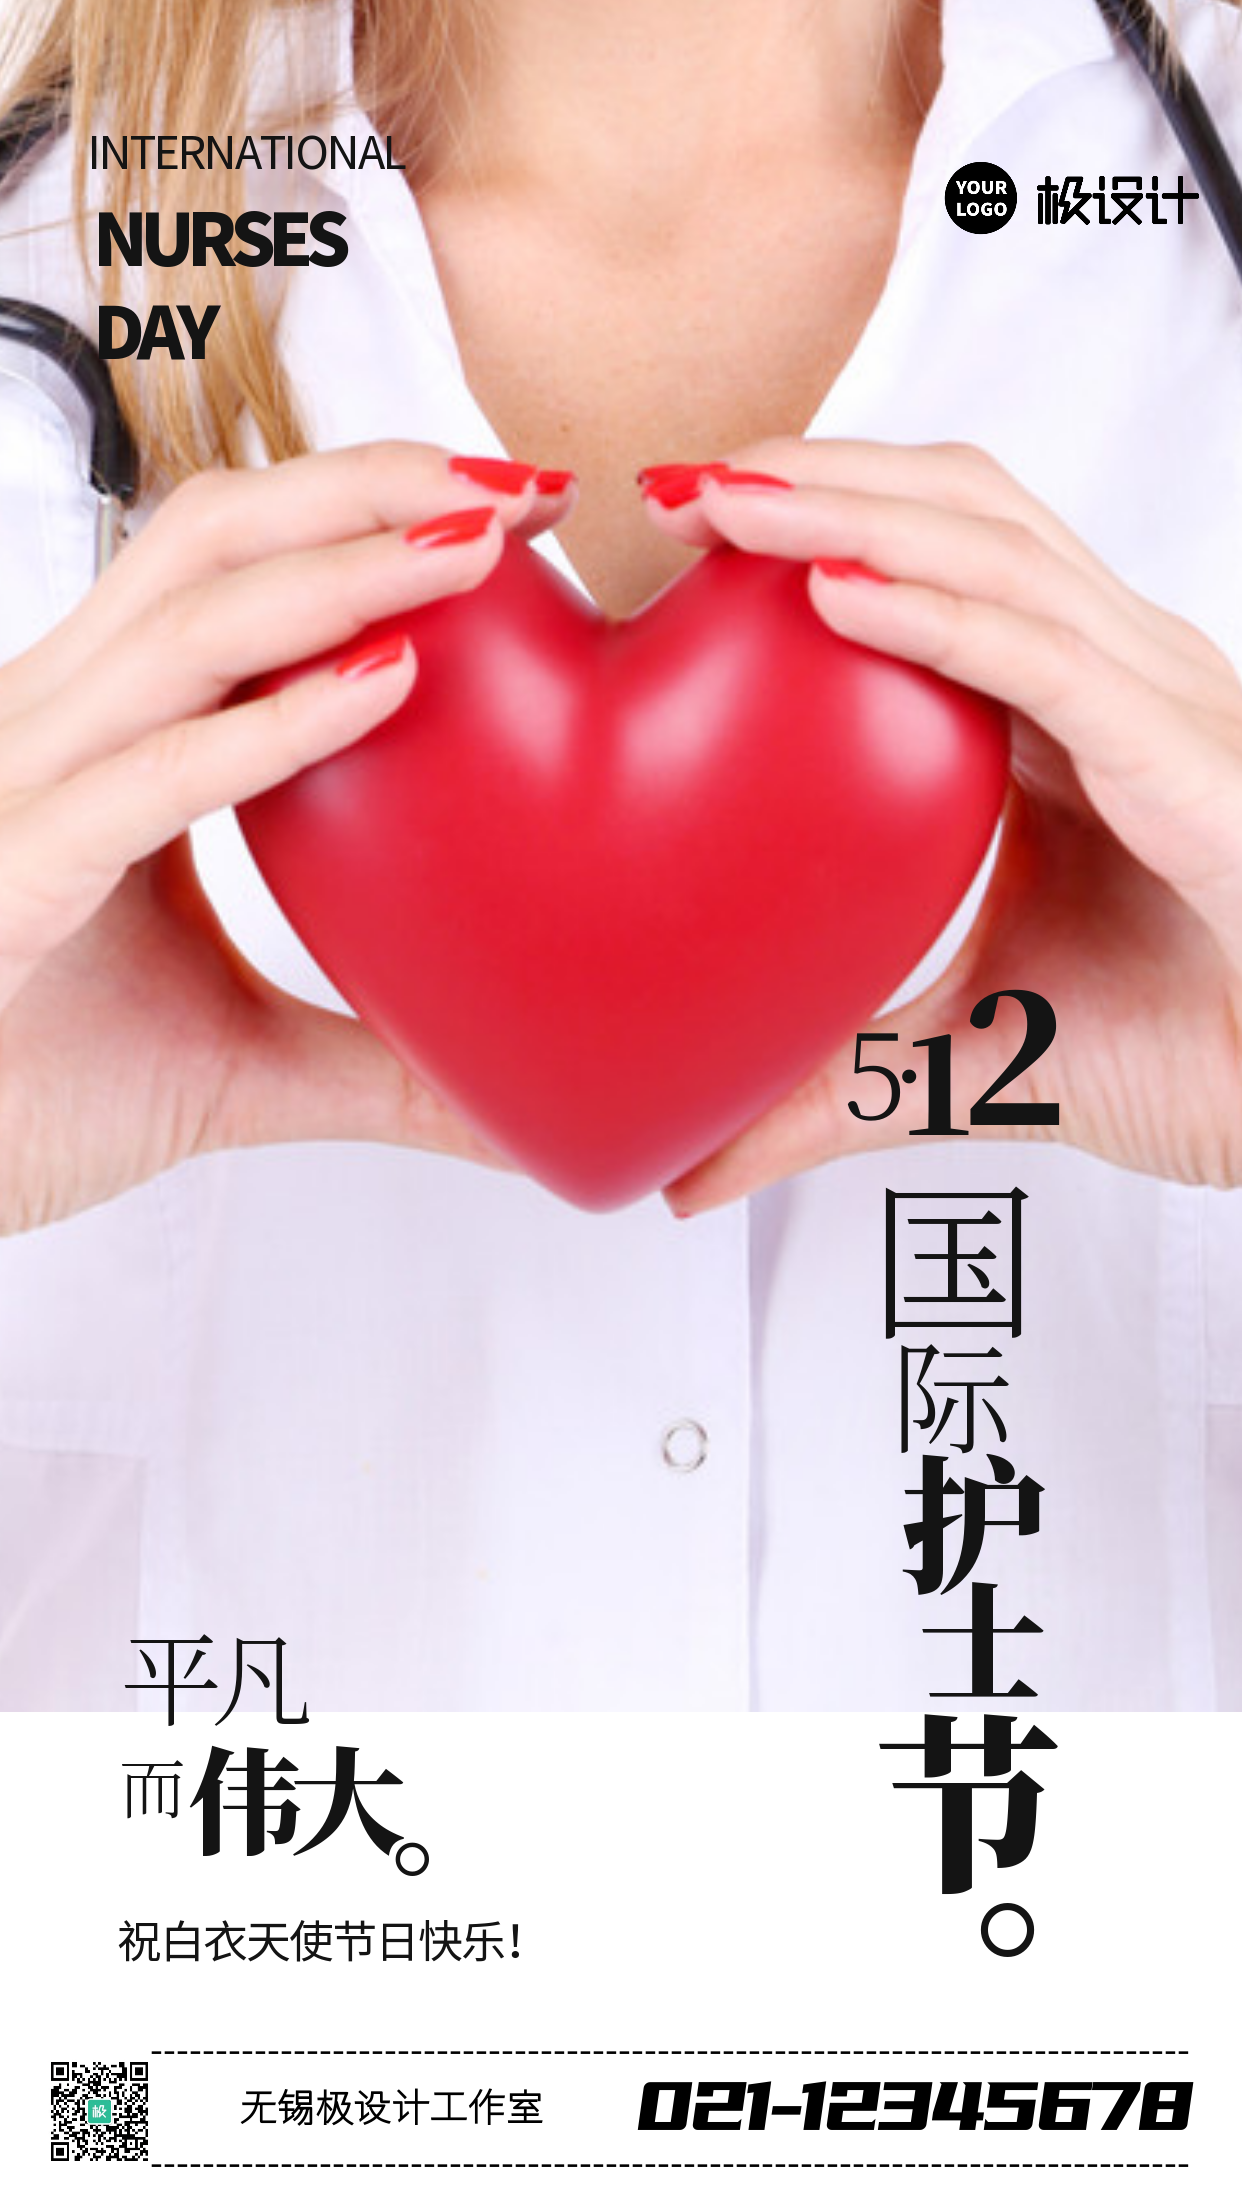 5月12日国际护士节小节日手机海报